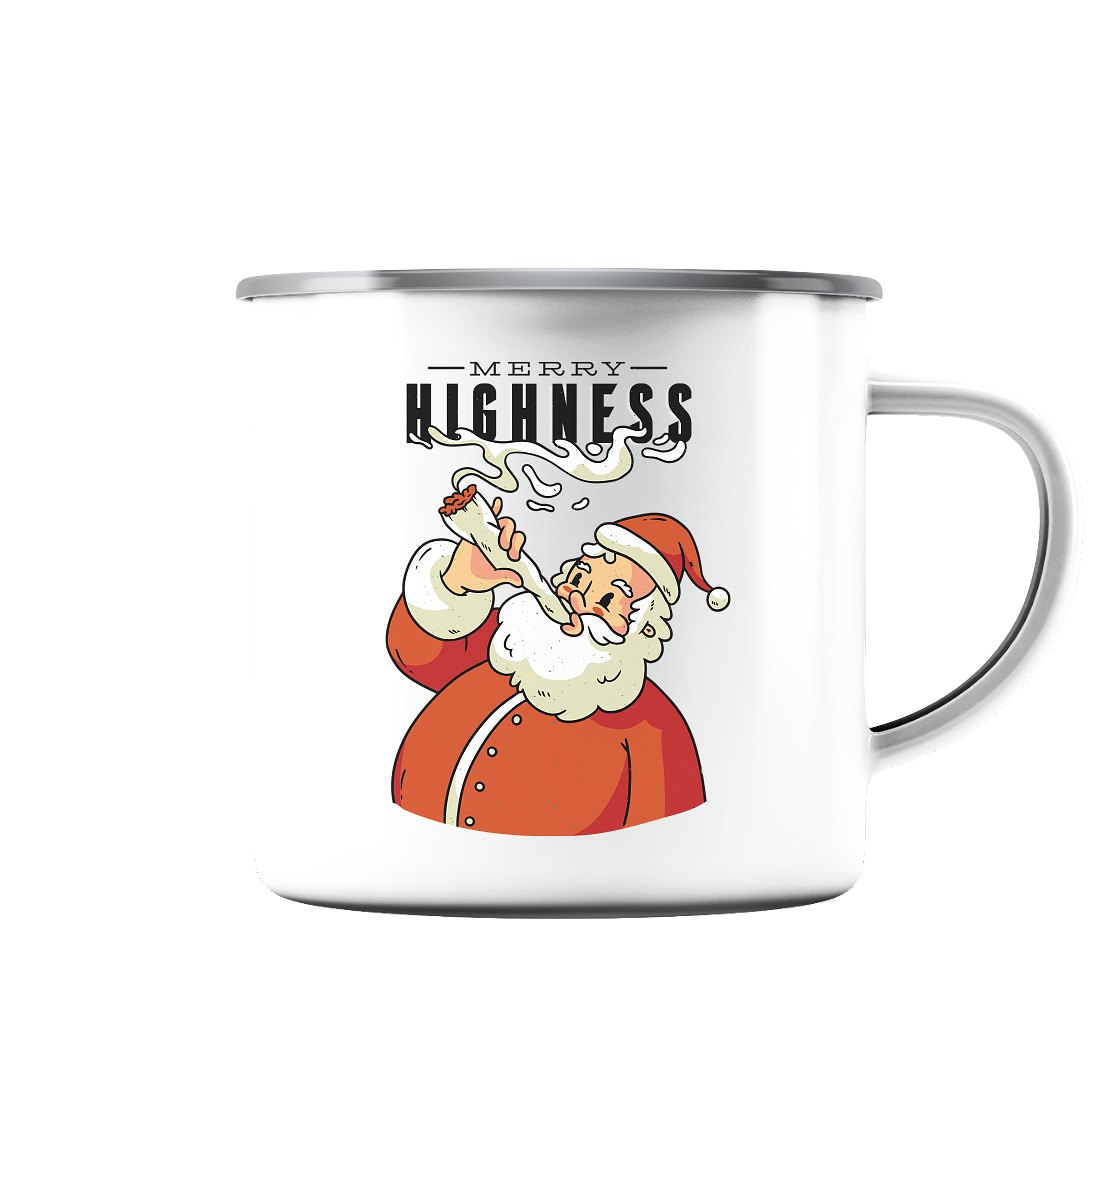 Weihnachten Kiffender Weihnachtsmann Nikolaus Merry Highness - Emaille Tasse (Silber)